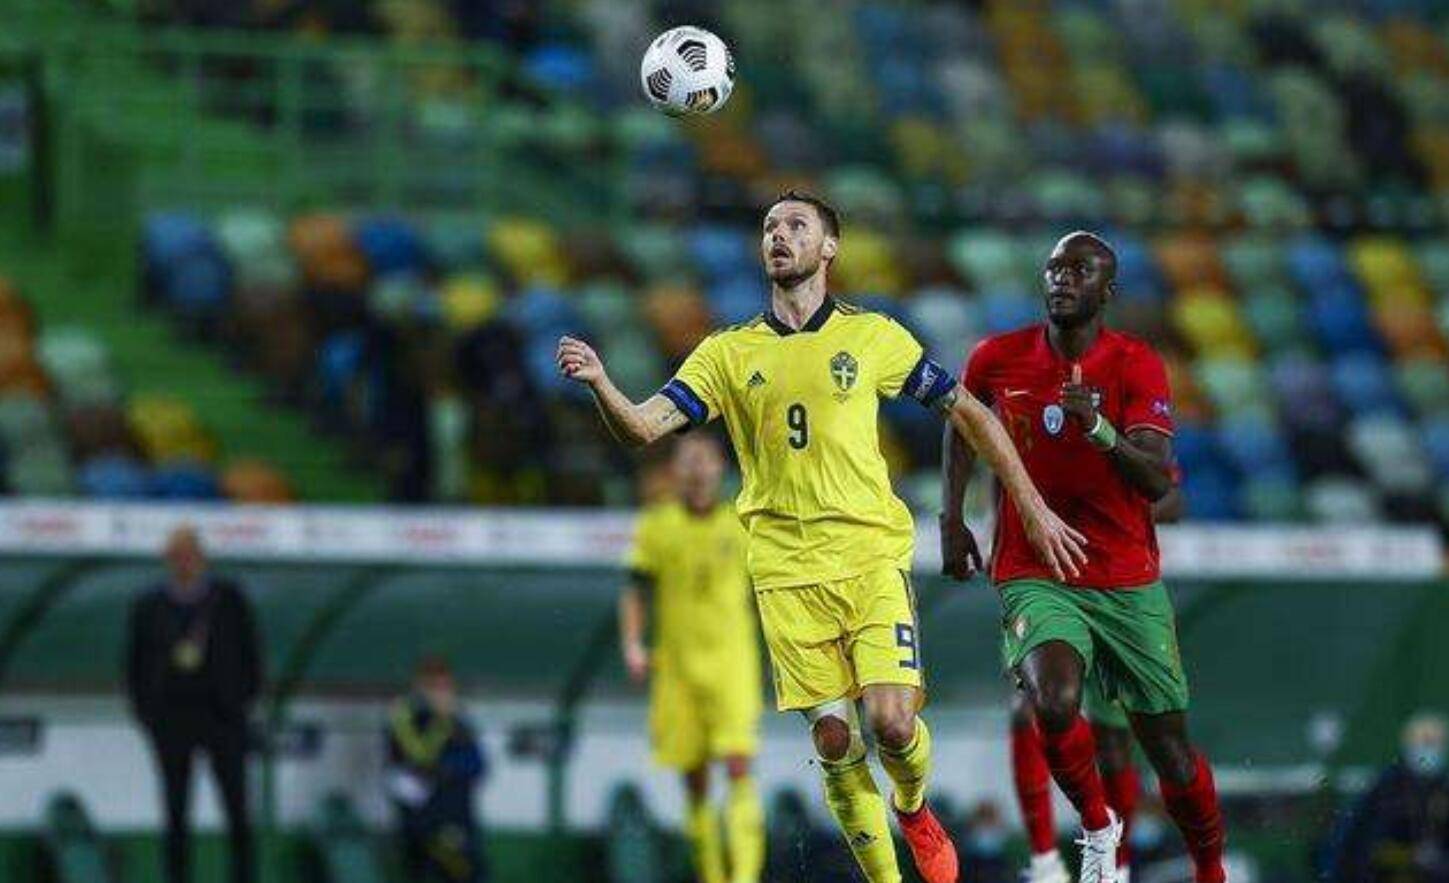 
欧国联 瑞典vs克罗地亚 莫德里奇领衔 缺少伊布瑞典难挡克罗地亚“BOB全站a